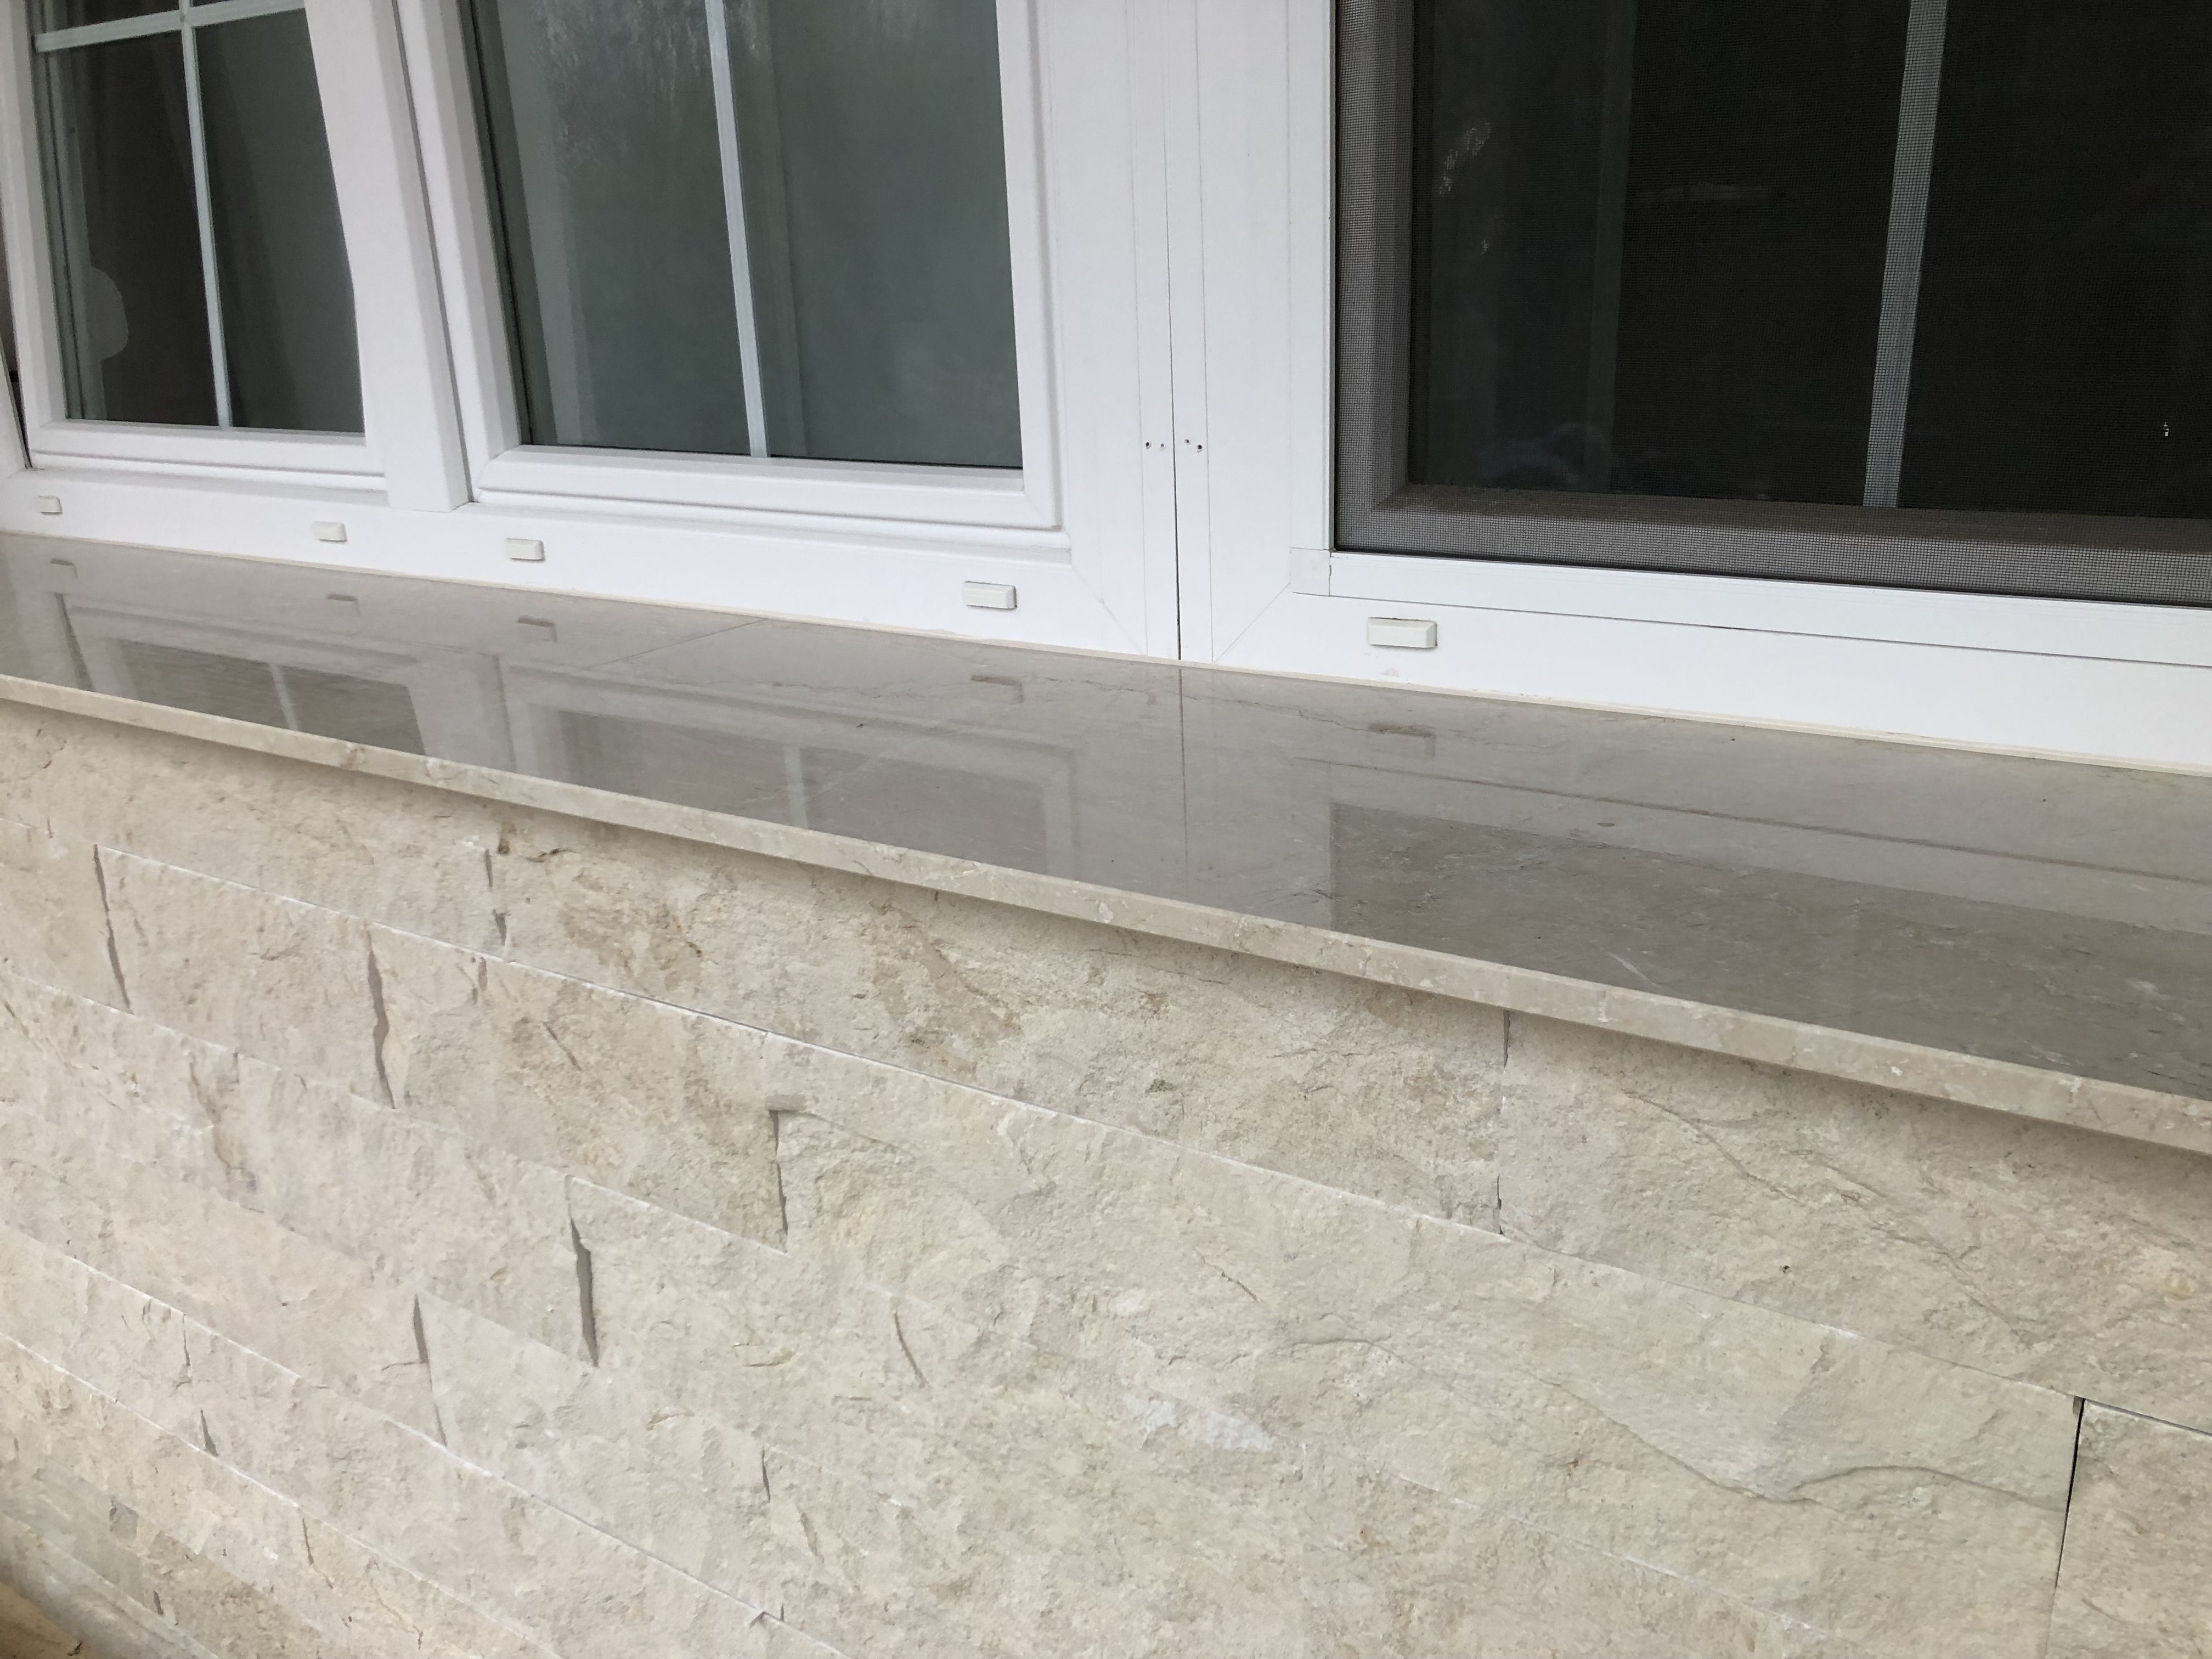 Botticino márvány ablakpárkány 2 cm vastagságban, felületkezeléssel! A homlokzatburkolat is nagy tételben megtalálható cégünknél!